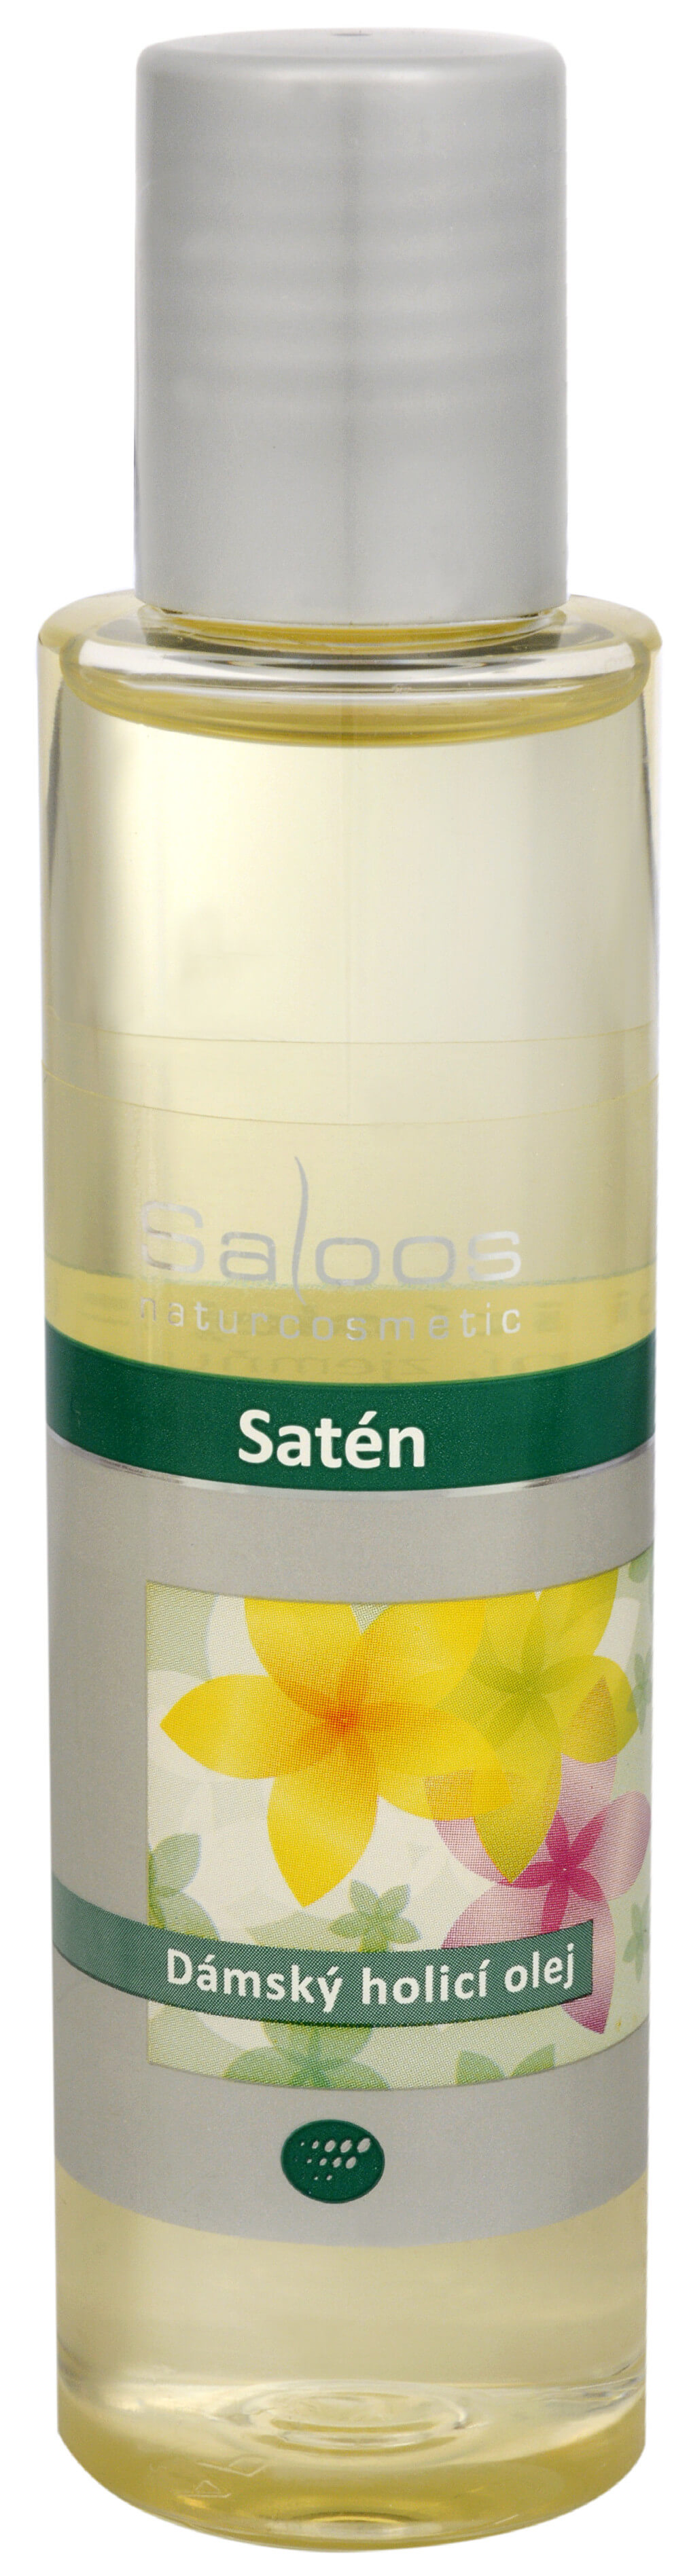 Saloos Satén - dámsky holiaci olej 125 ml + 2 mesiace na vrátenie tovaru